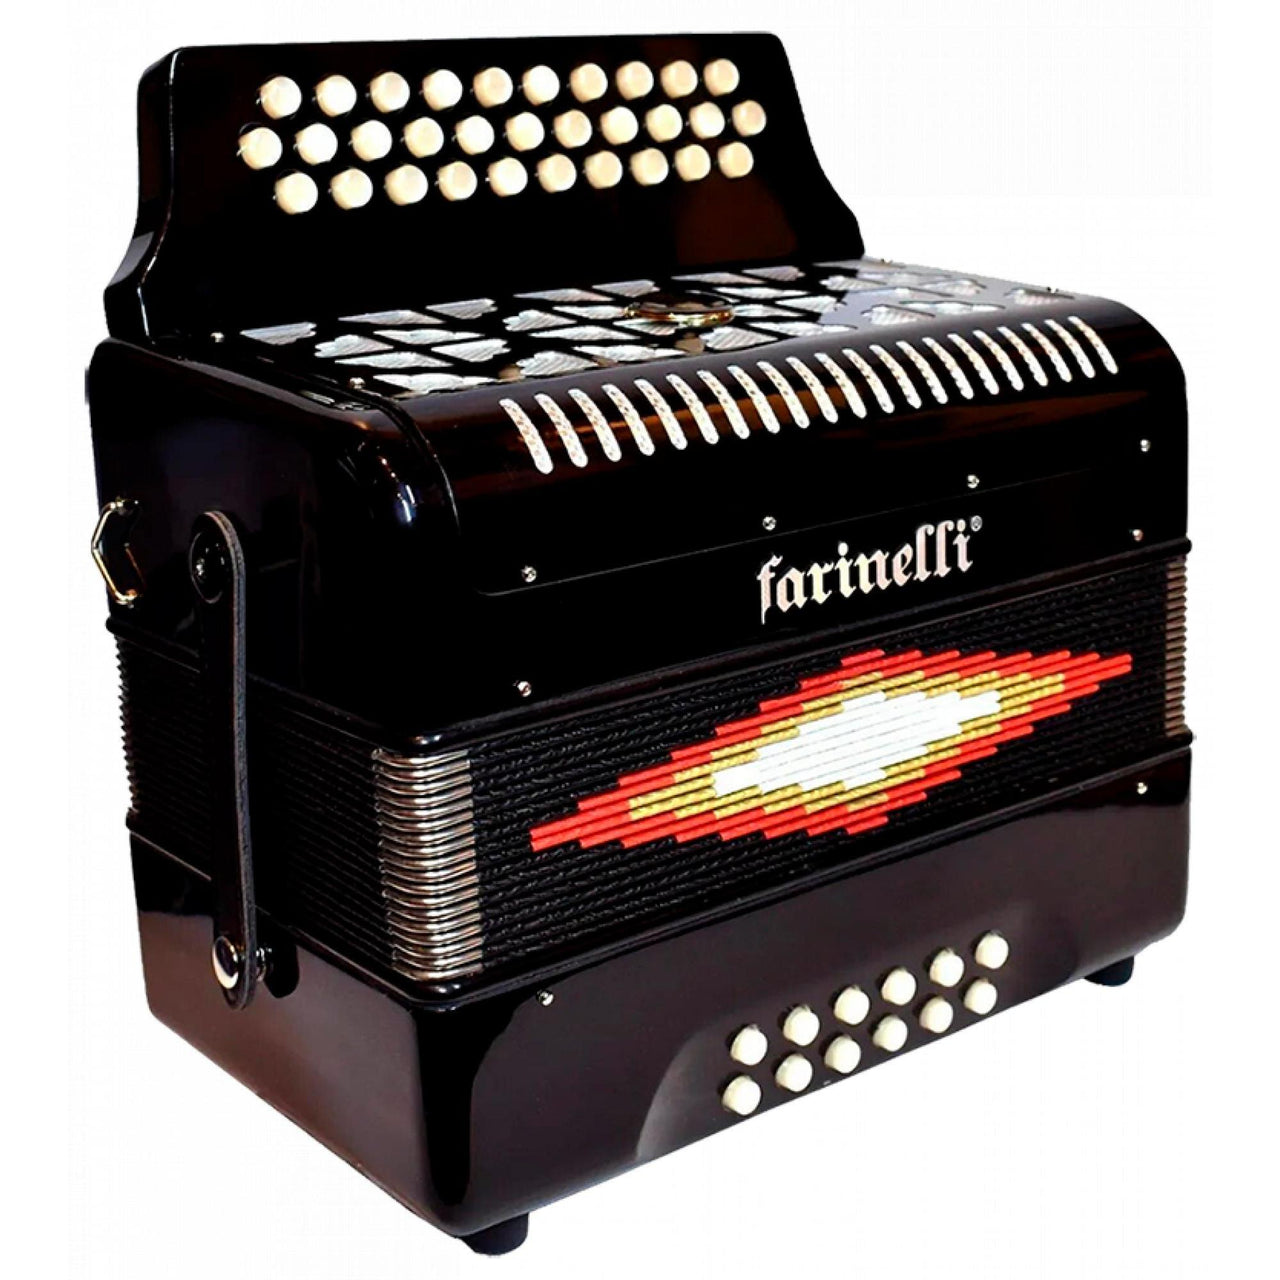 Acordeon Farinelli Premium Botones Bea Negro 3012sin – Musicales Doris